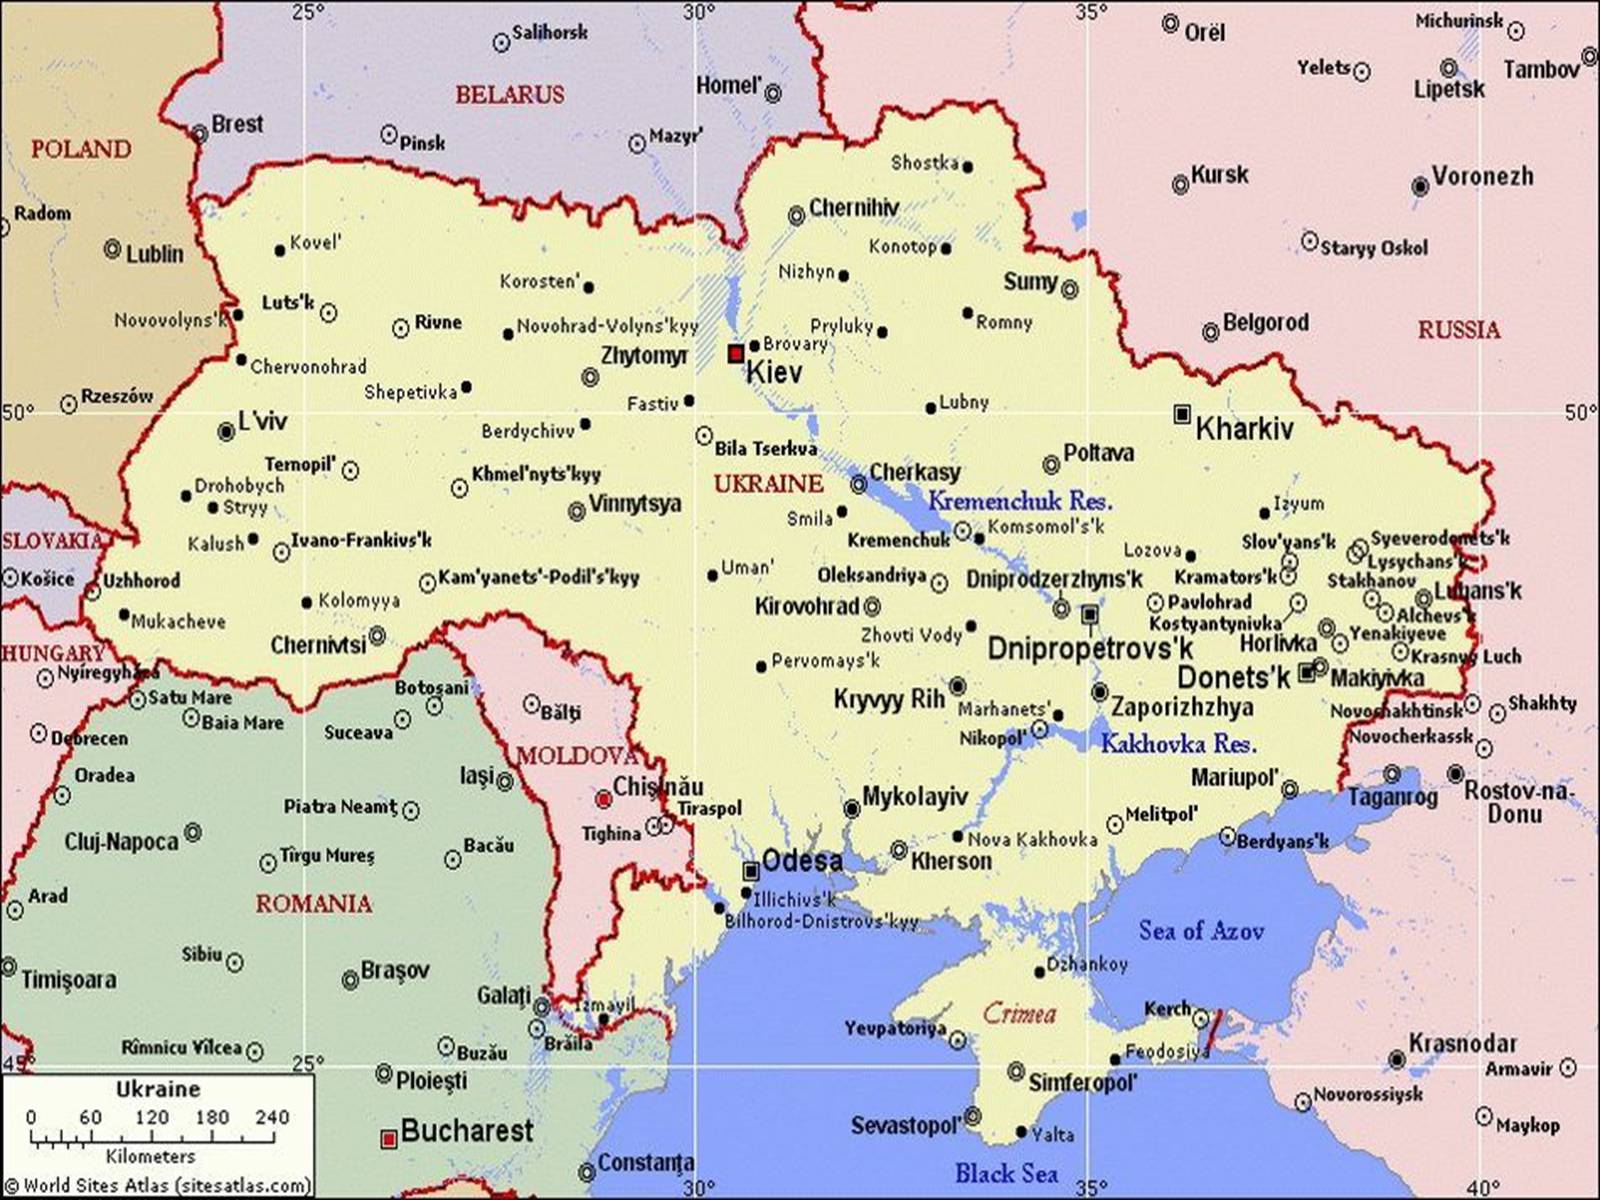 Карта украины с соседними границами